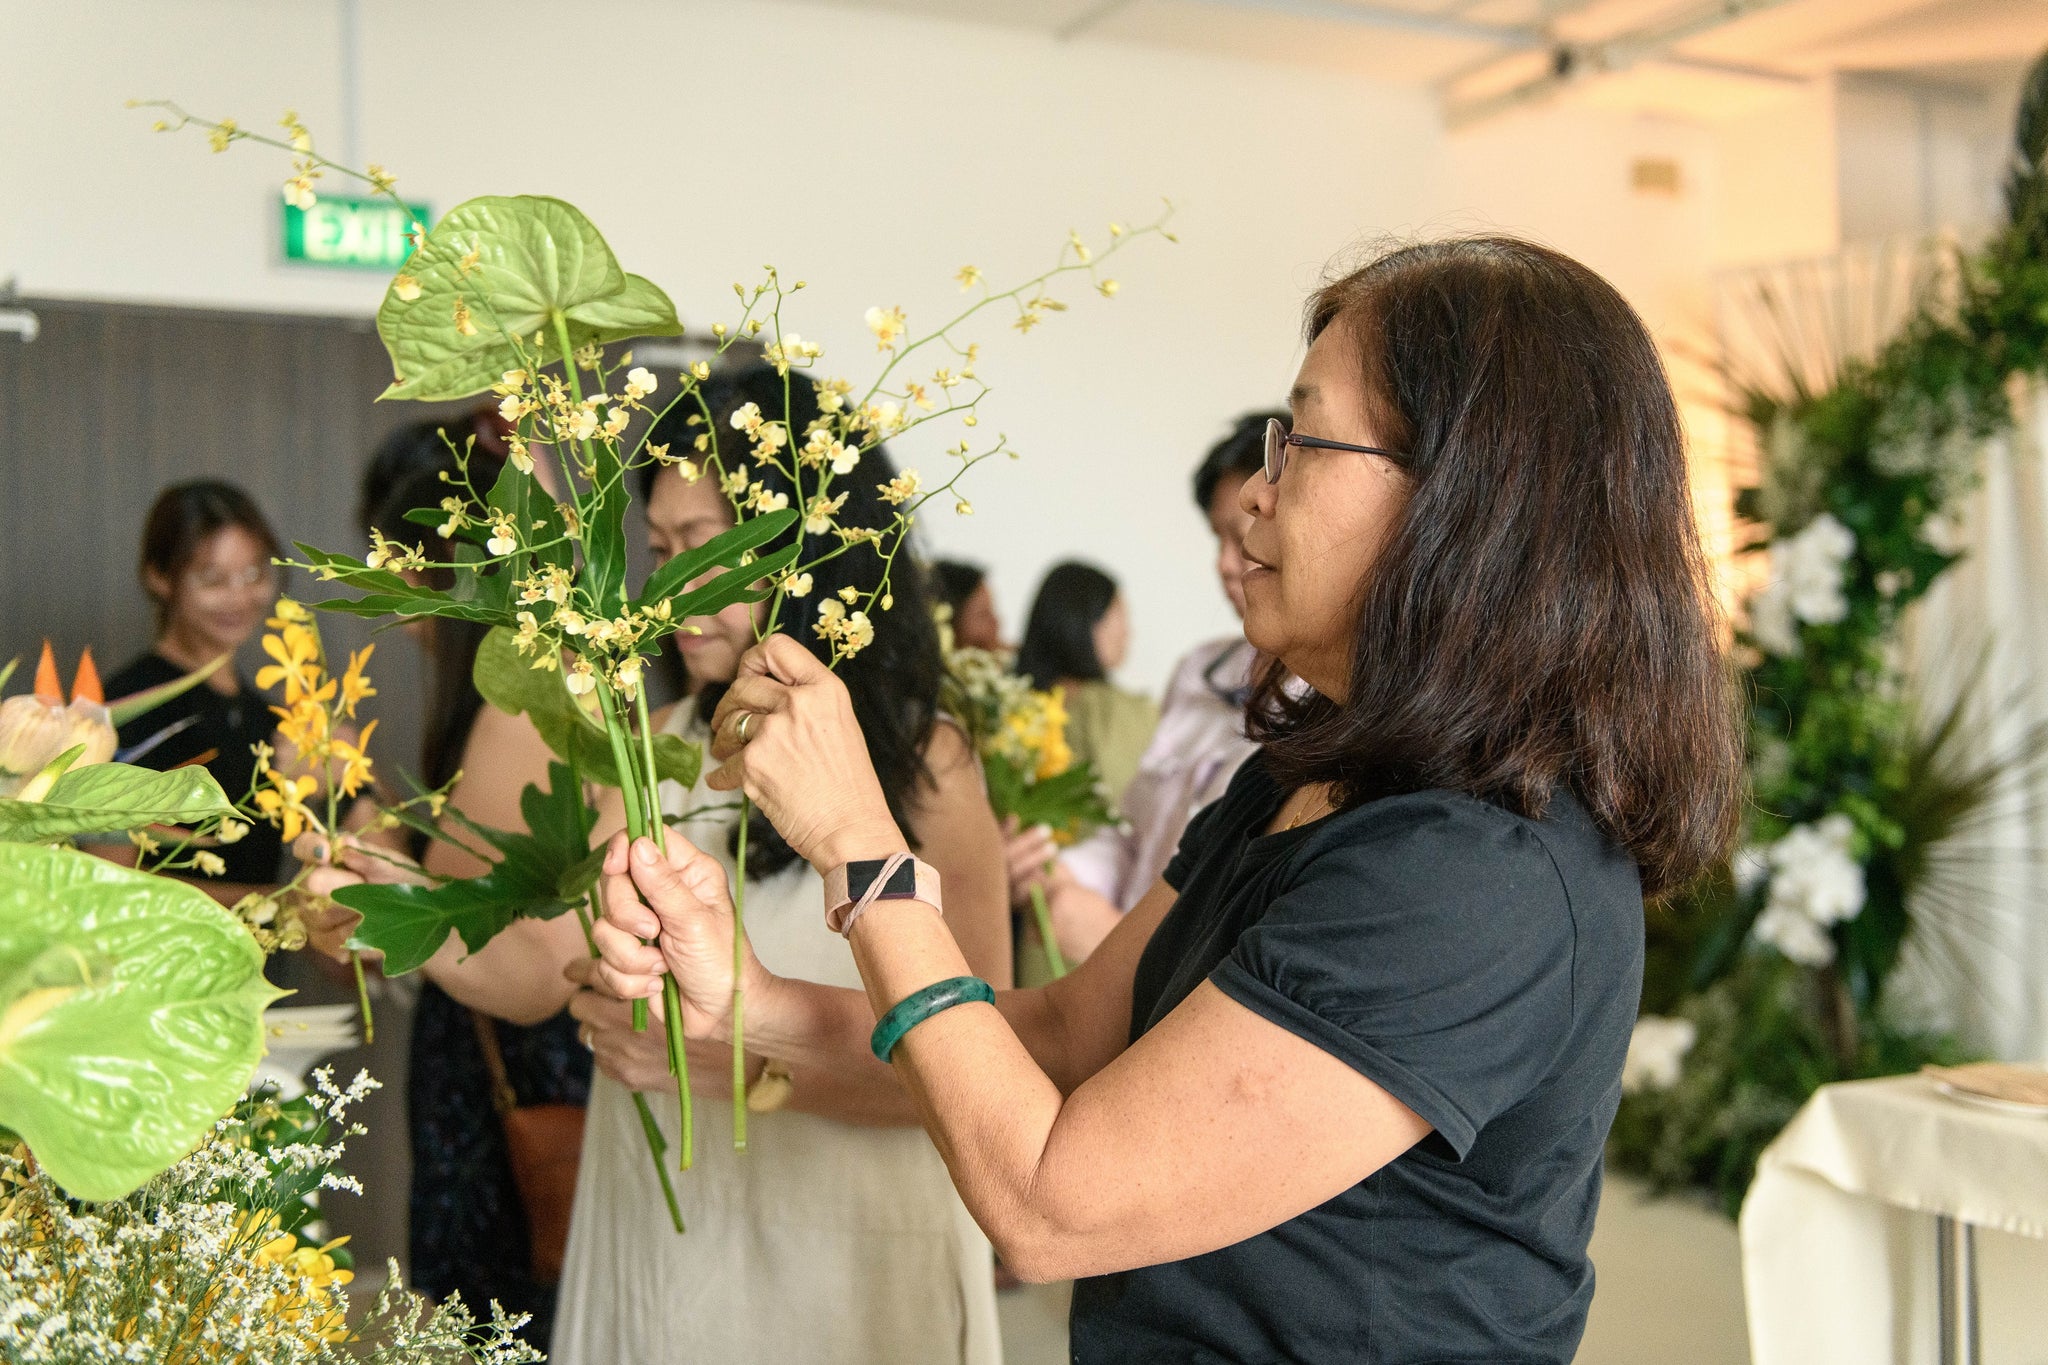 Echevaria.co Studio Launch Event Botanical Floral Arrangements